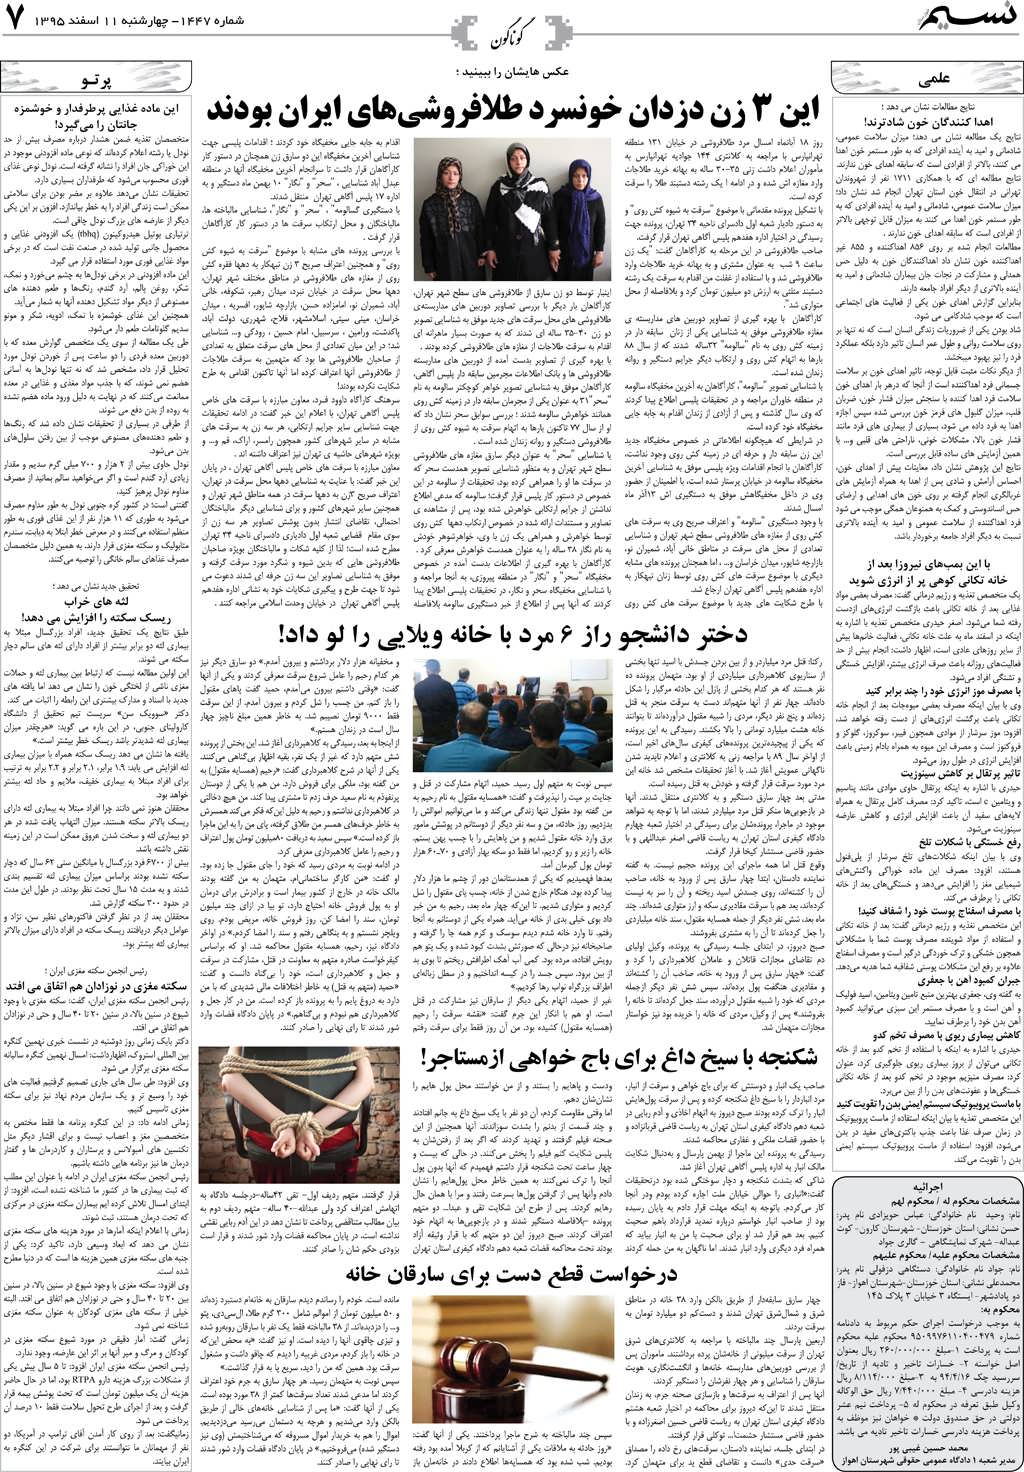 صفحه گوناگون روزنامه نسیم شماره 1447